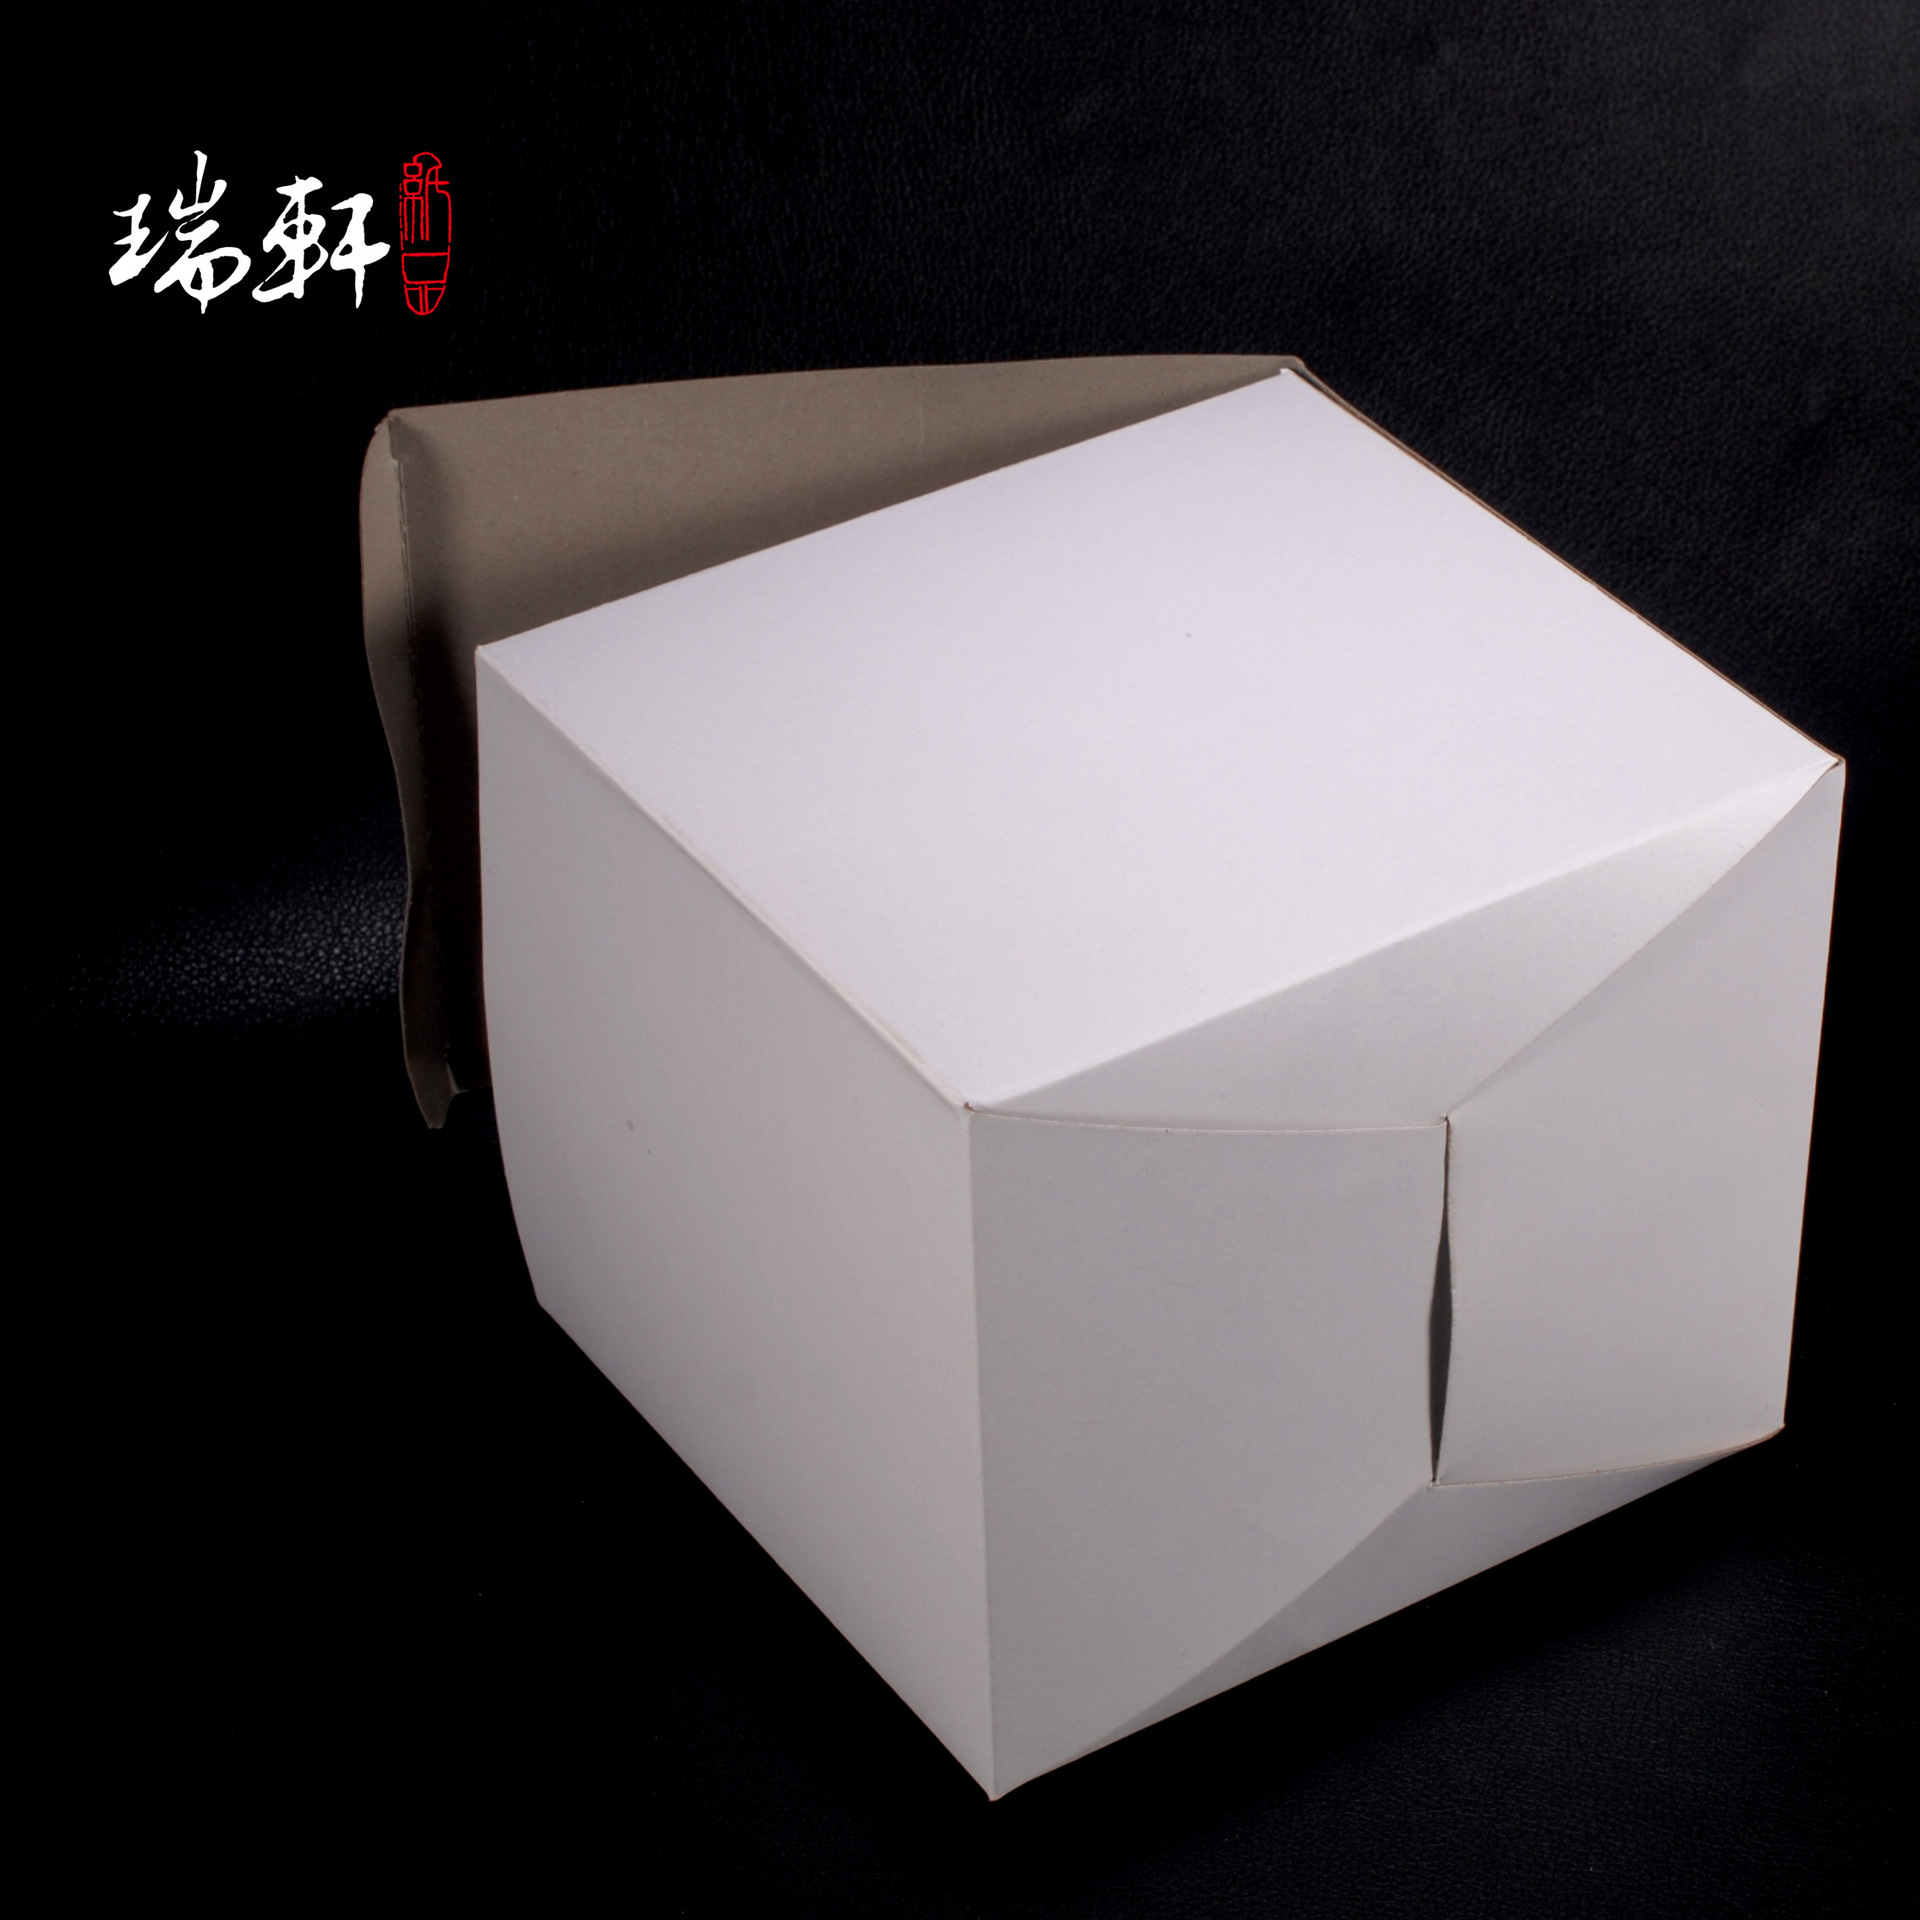 包装盒印刷订做_用ai做查入的图片做名片怎样印刷_化妆品盒印刷